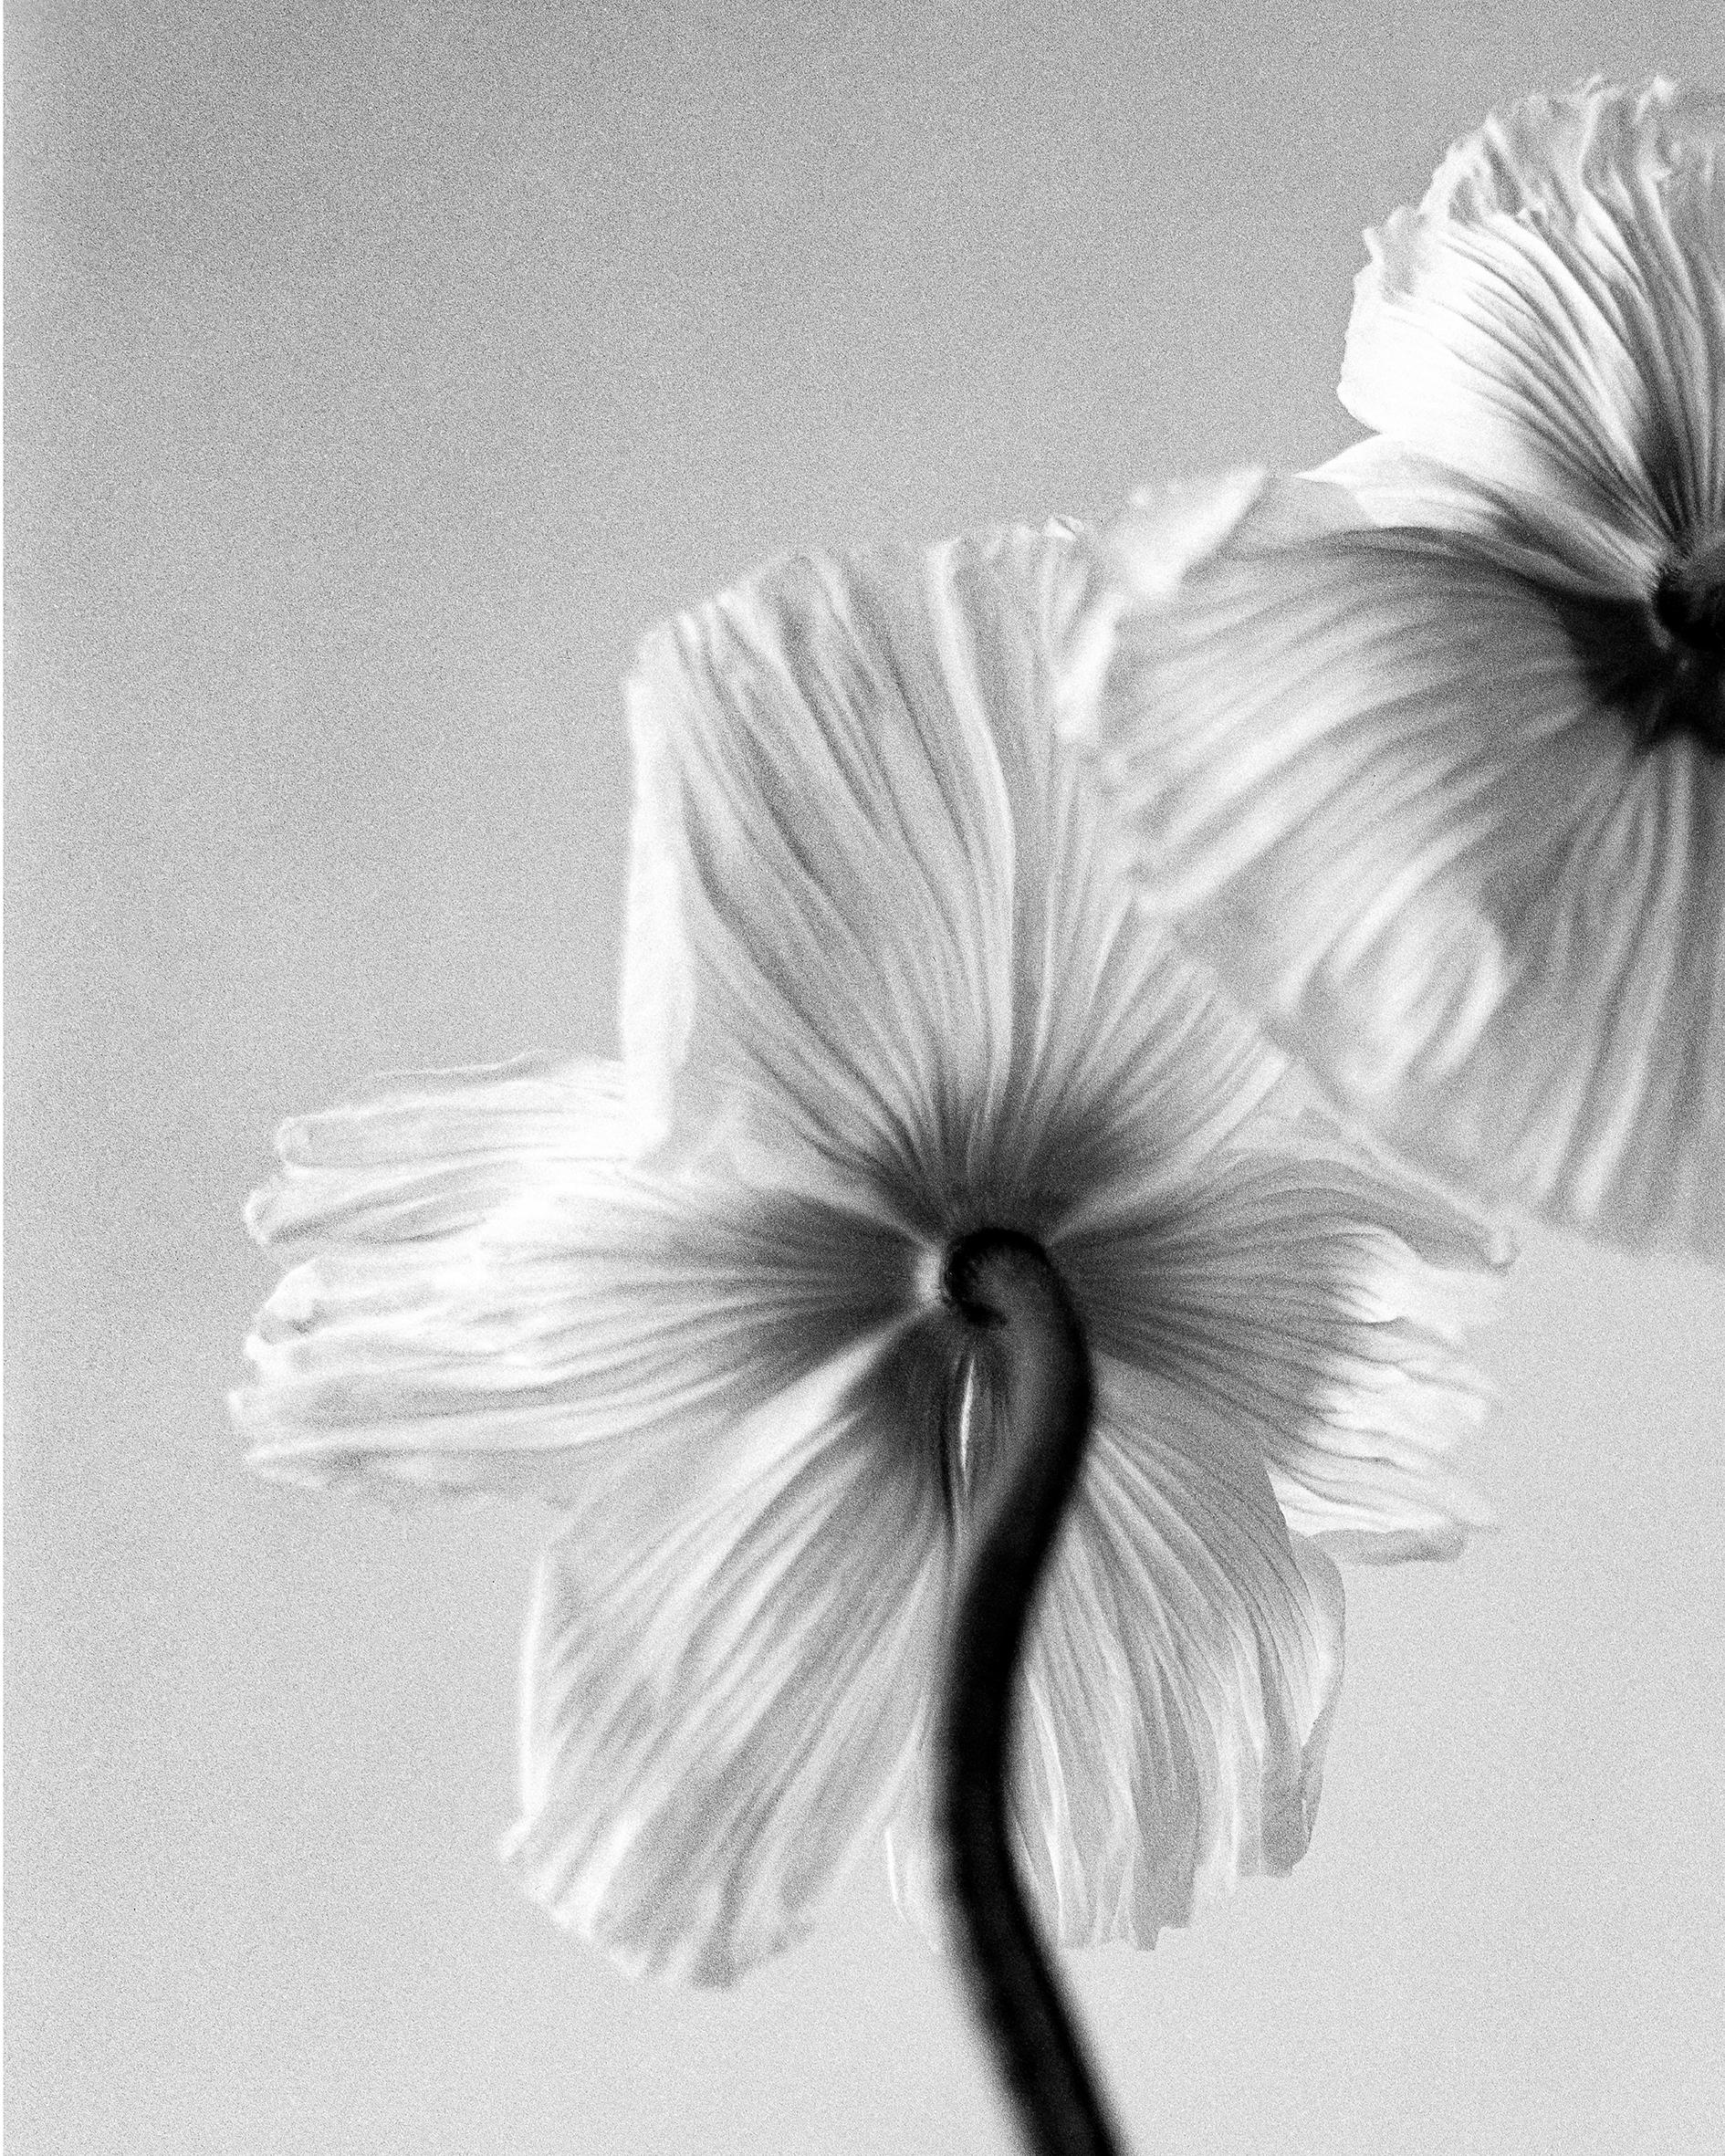 Drei Mohnblumen – Schwarz-Weiß-Blumenfotografie in limitierter Auflage von 20 Stück – Photograph von Ugne Pouwell